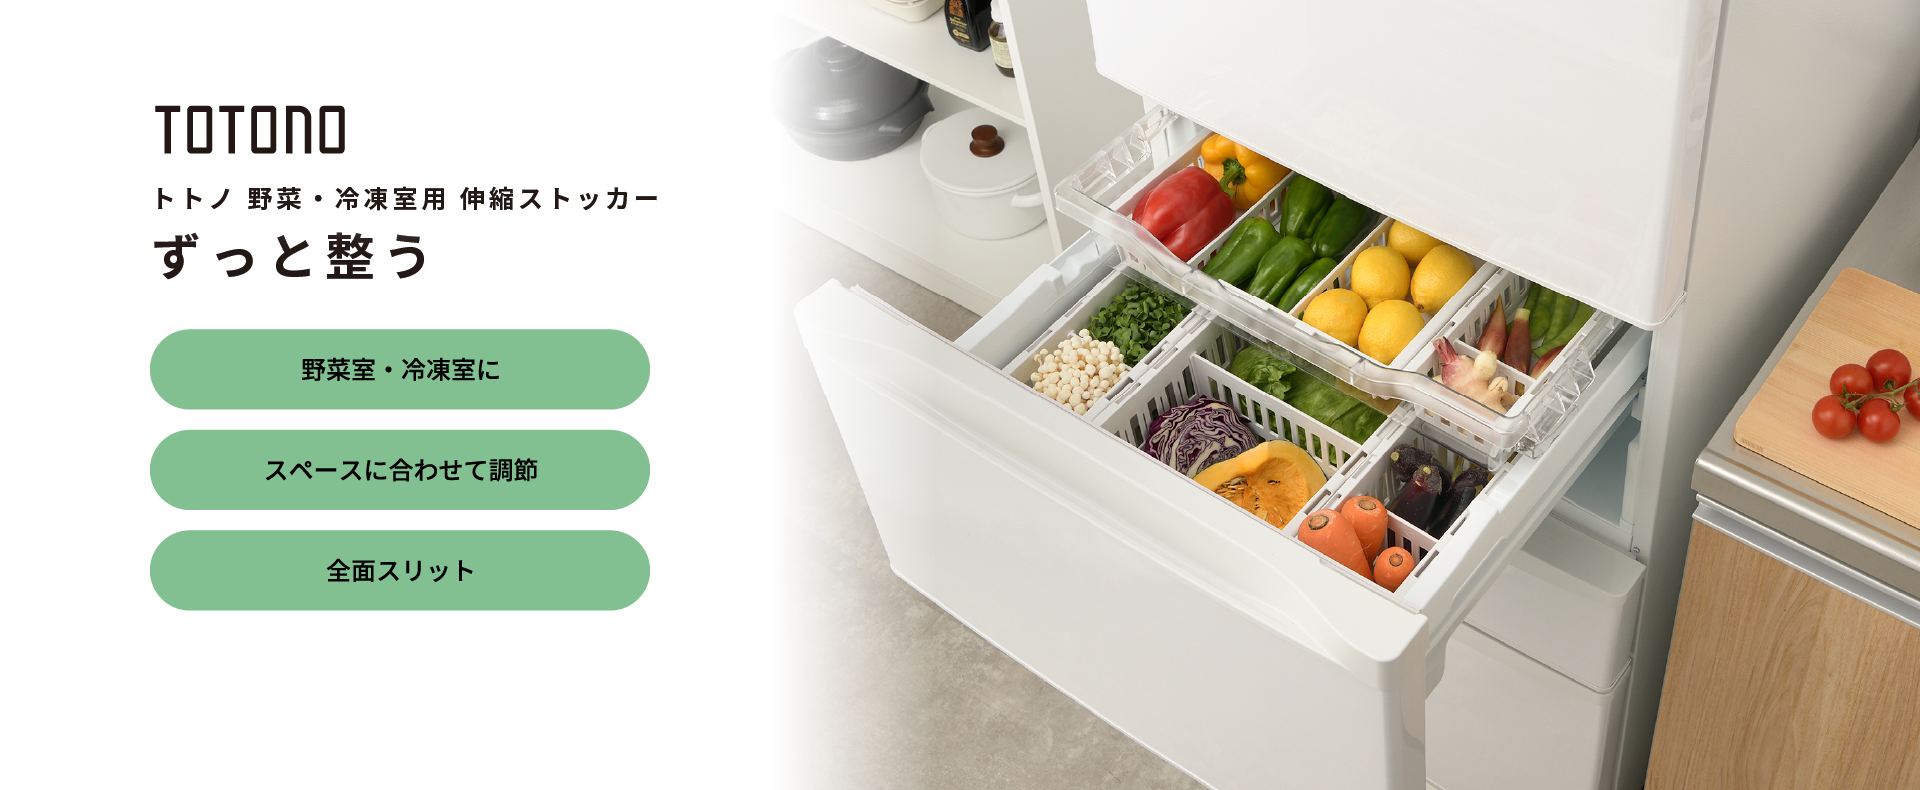 トトノ 野菜・冷凍室用 伸縮ストッカー